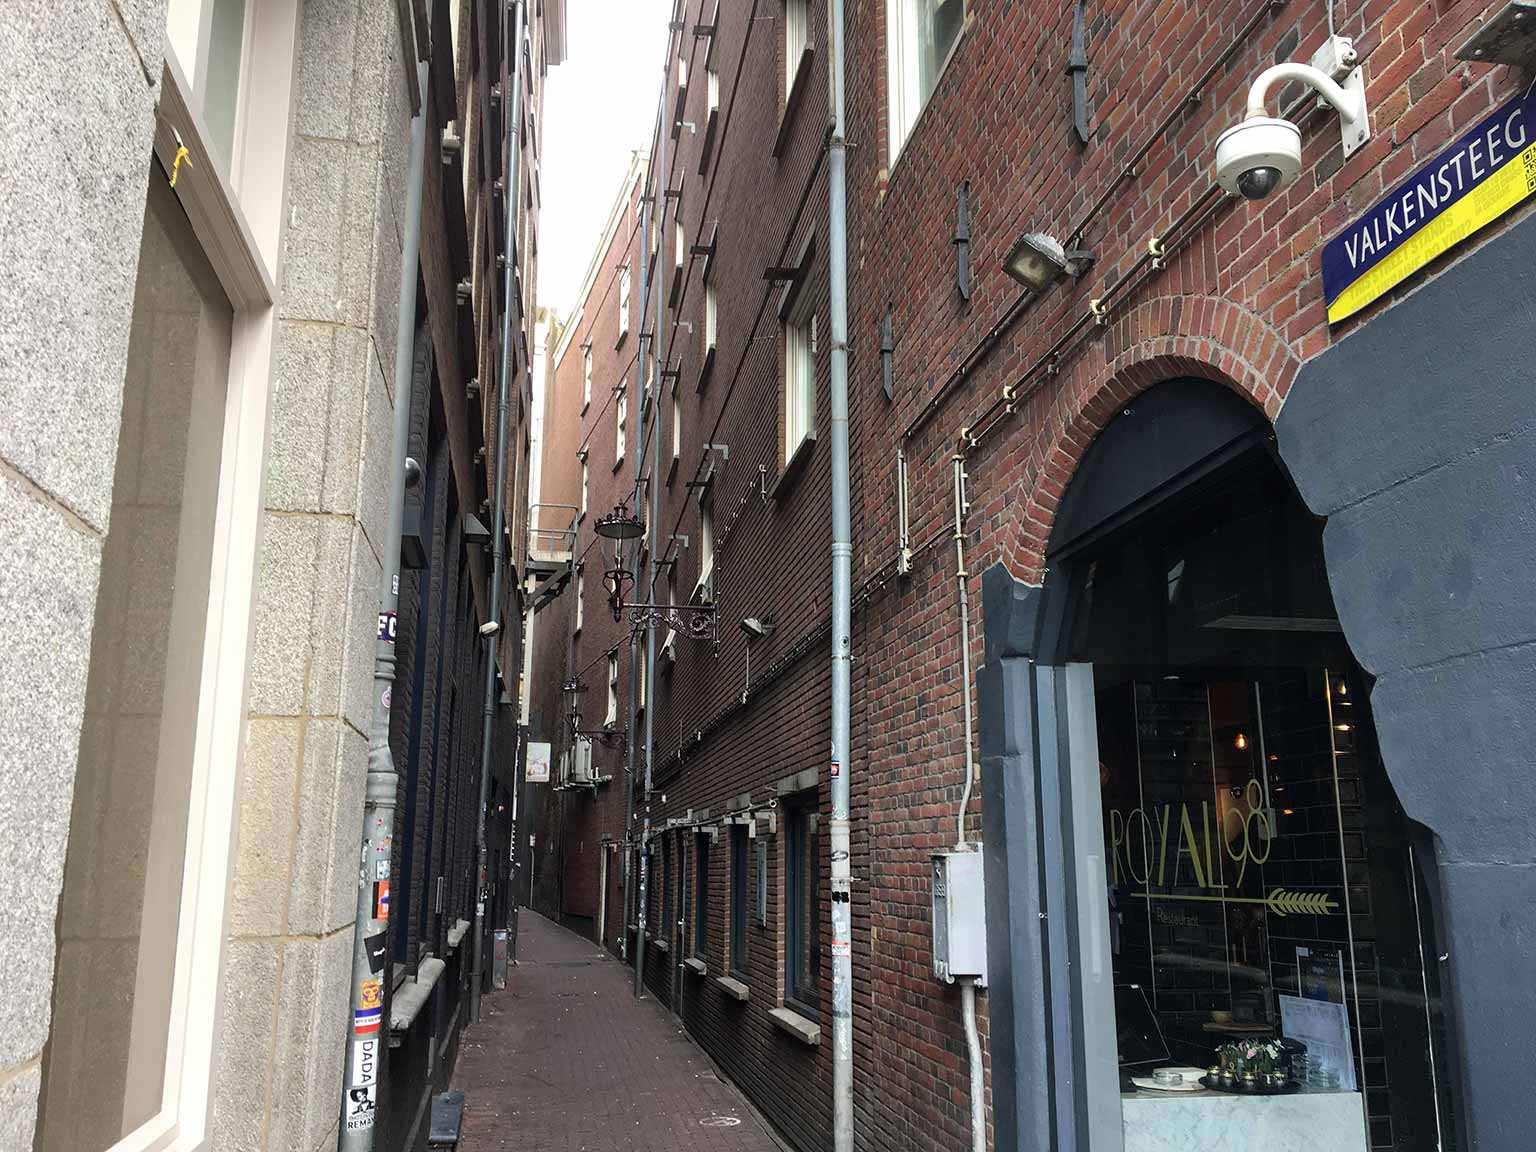 Kijkje door de Valkensteeg, Amsterdam, van Damrak naar Nieuwendijk